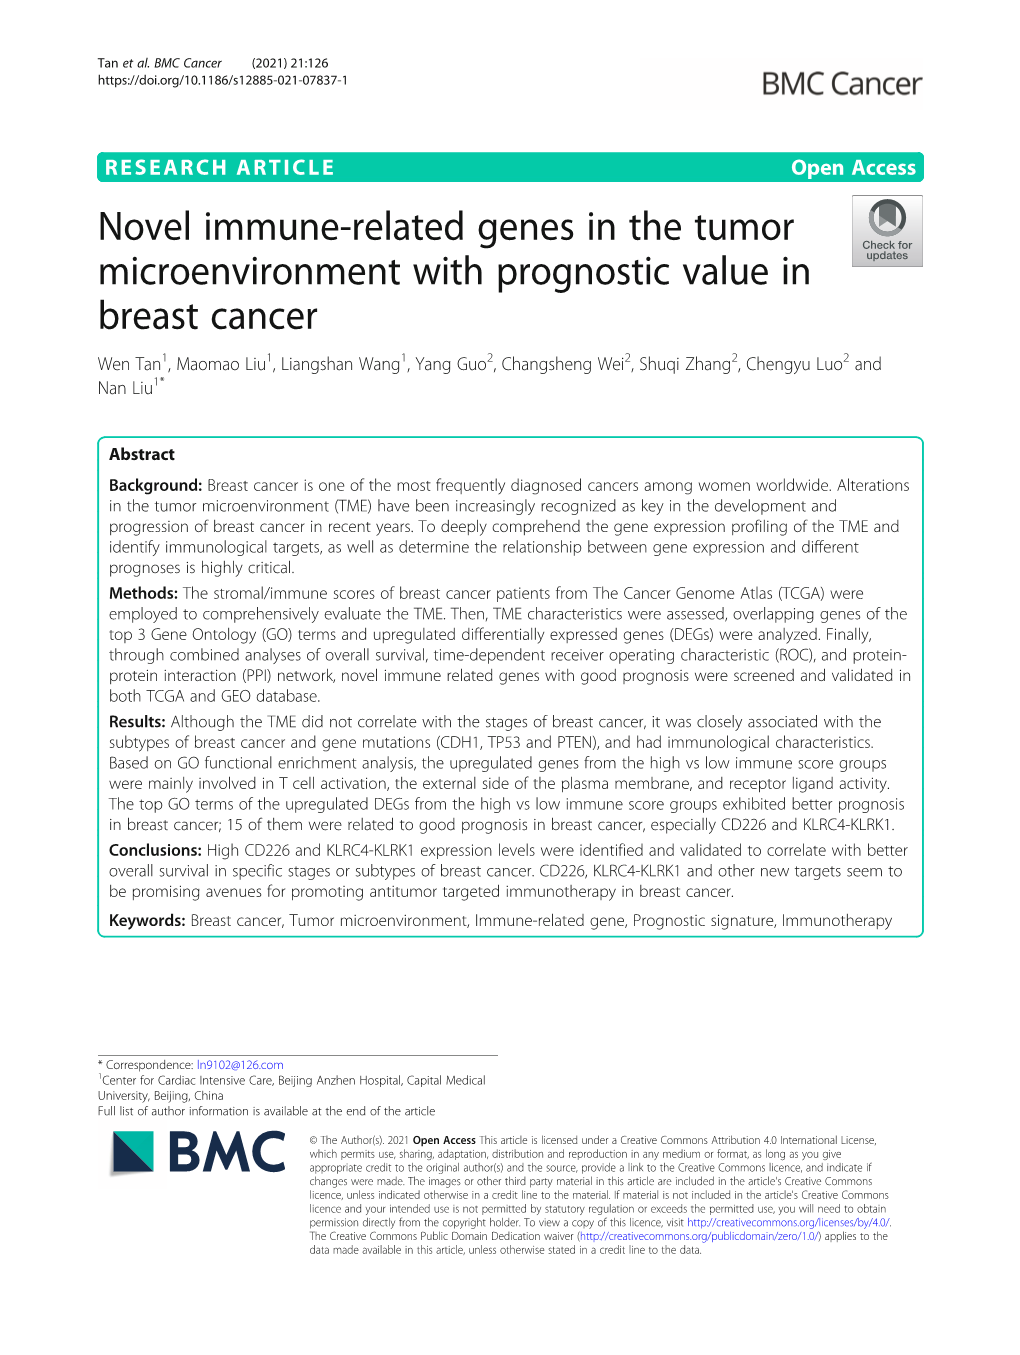 Novel Immune-Related Genes in the Tumor